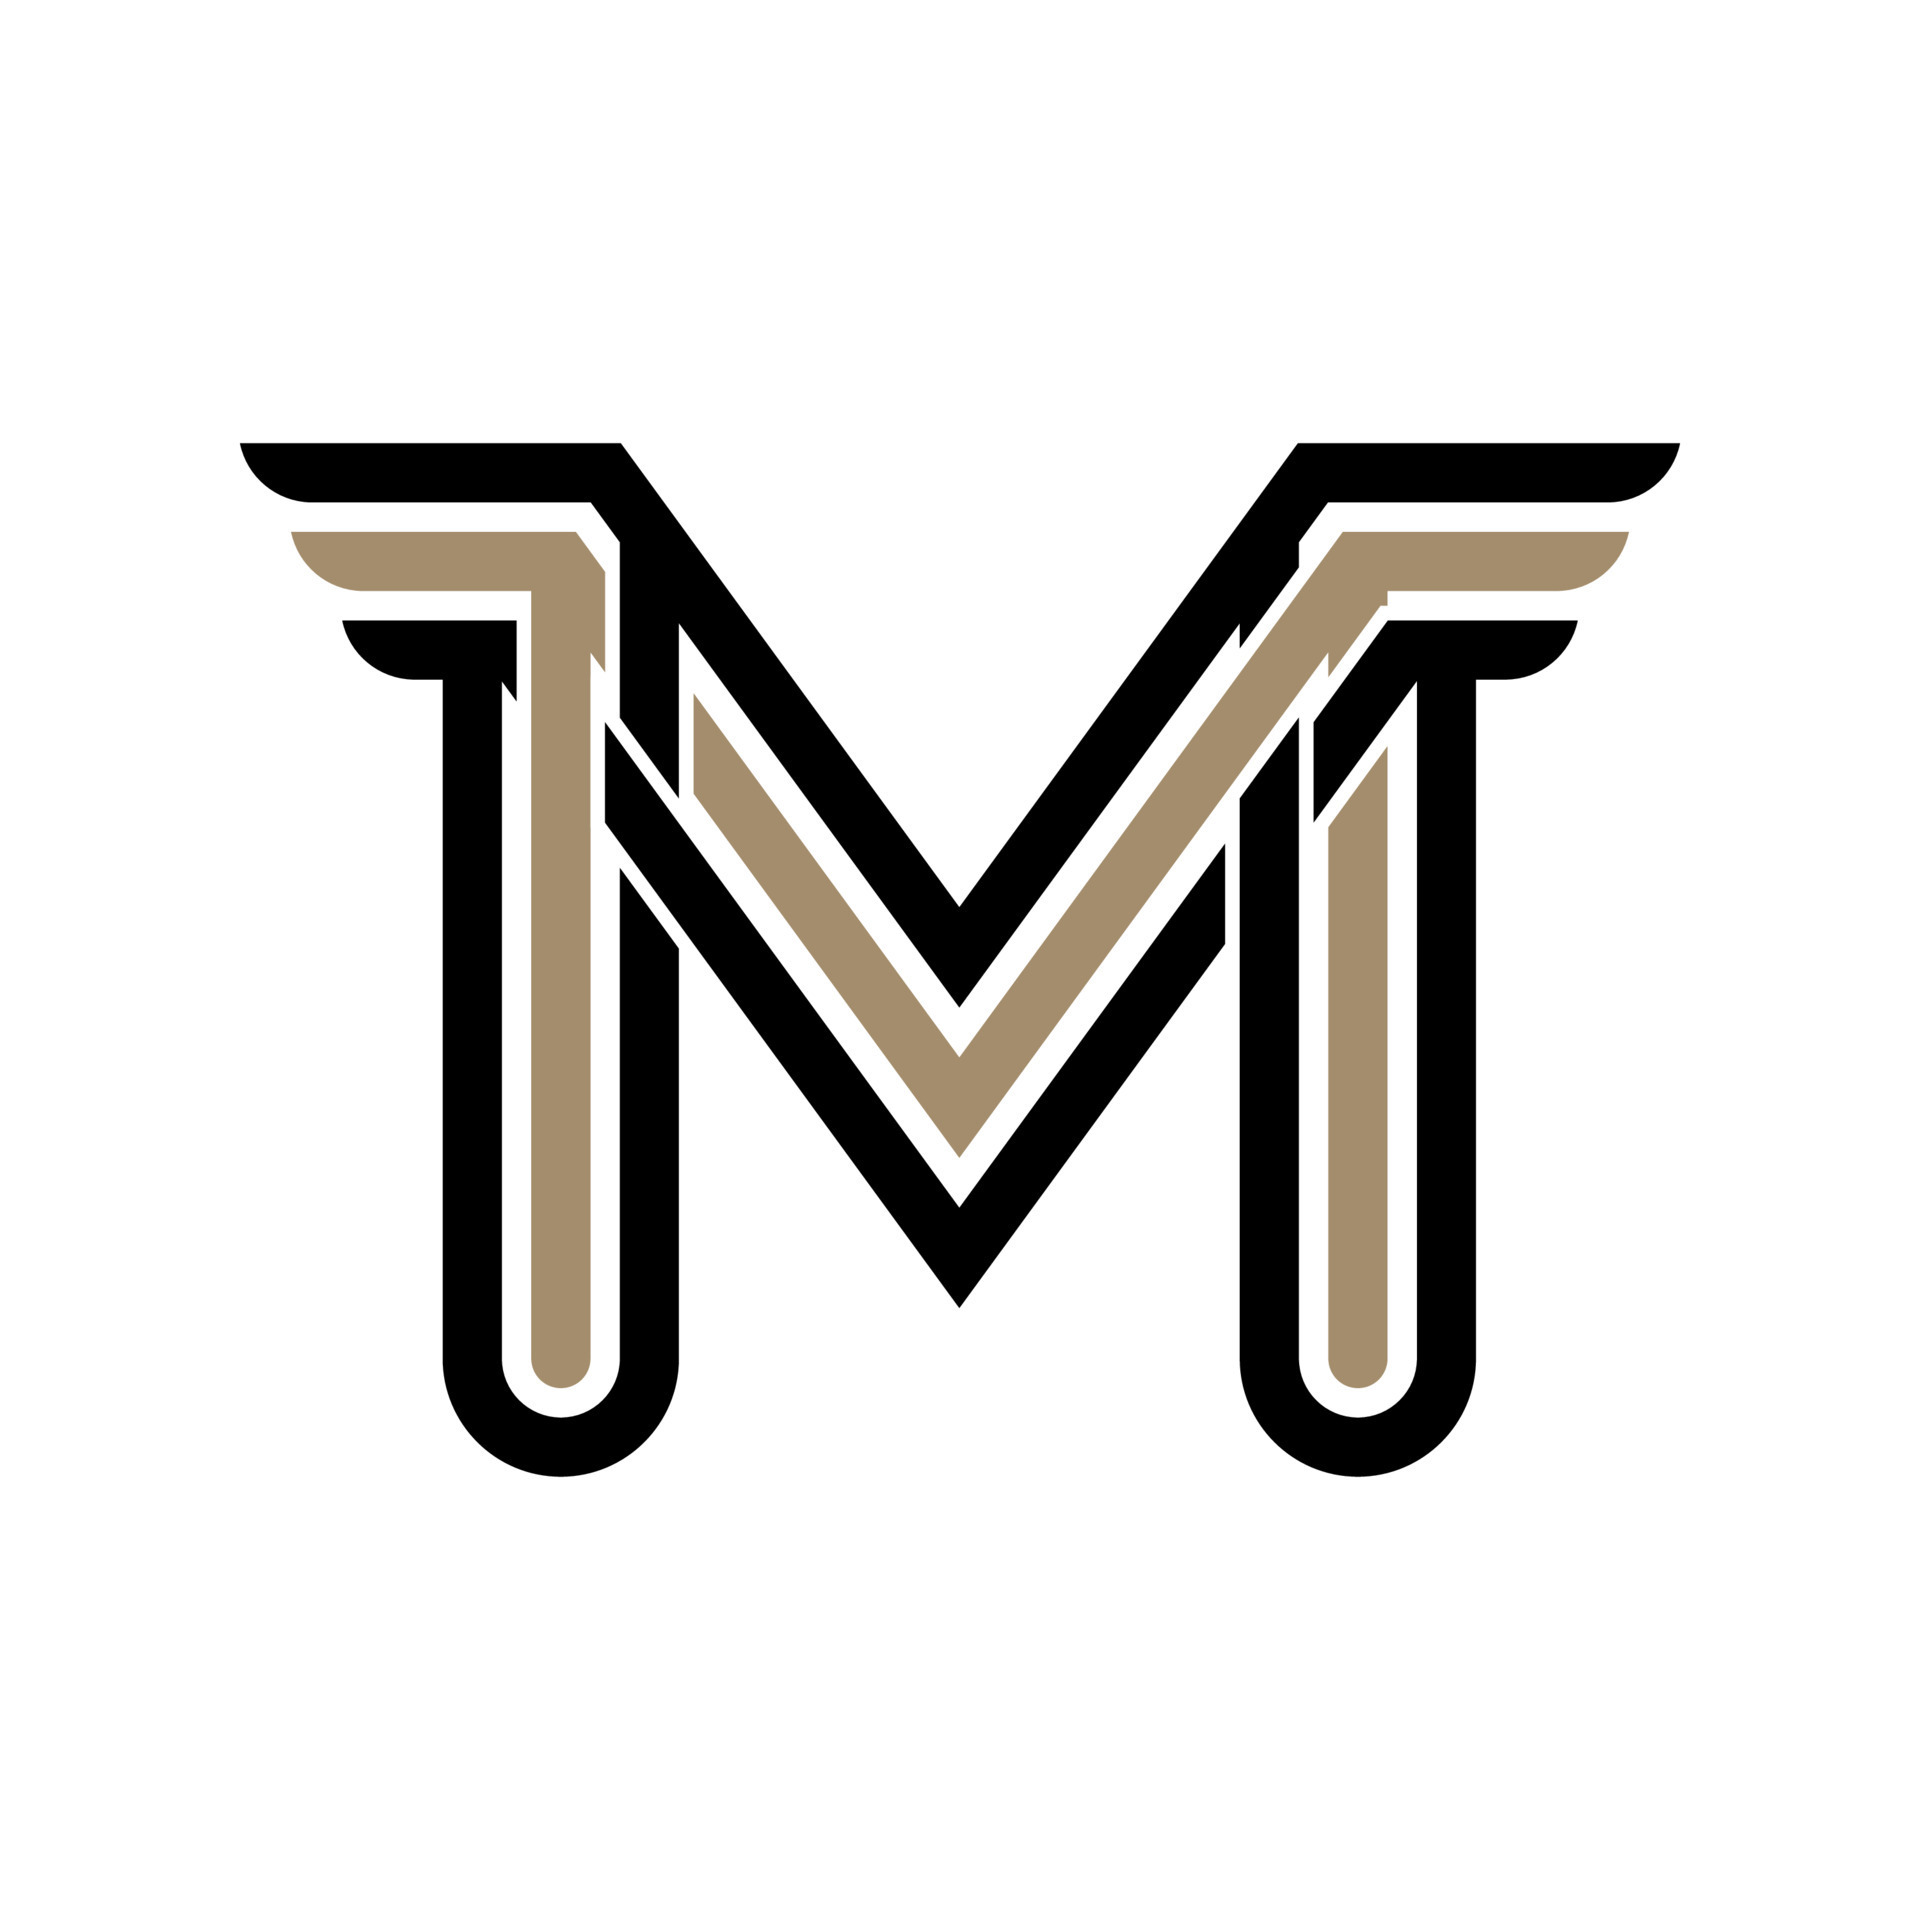 Premium Vector  Abstract mm initials monogram logo design, icon